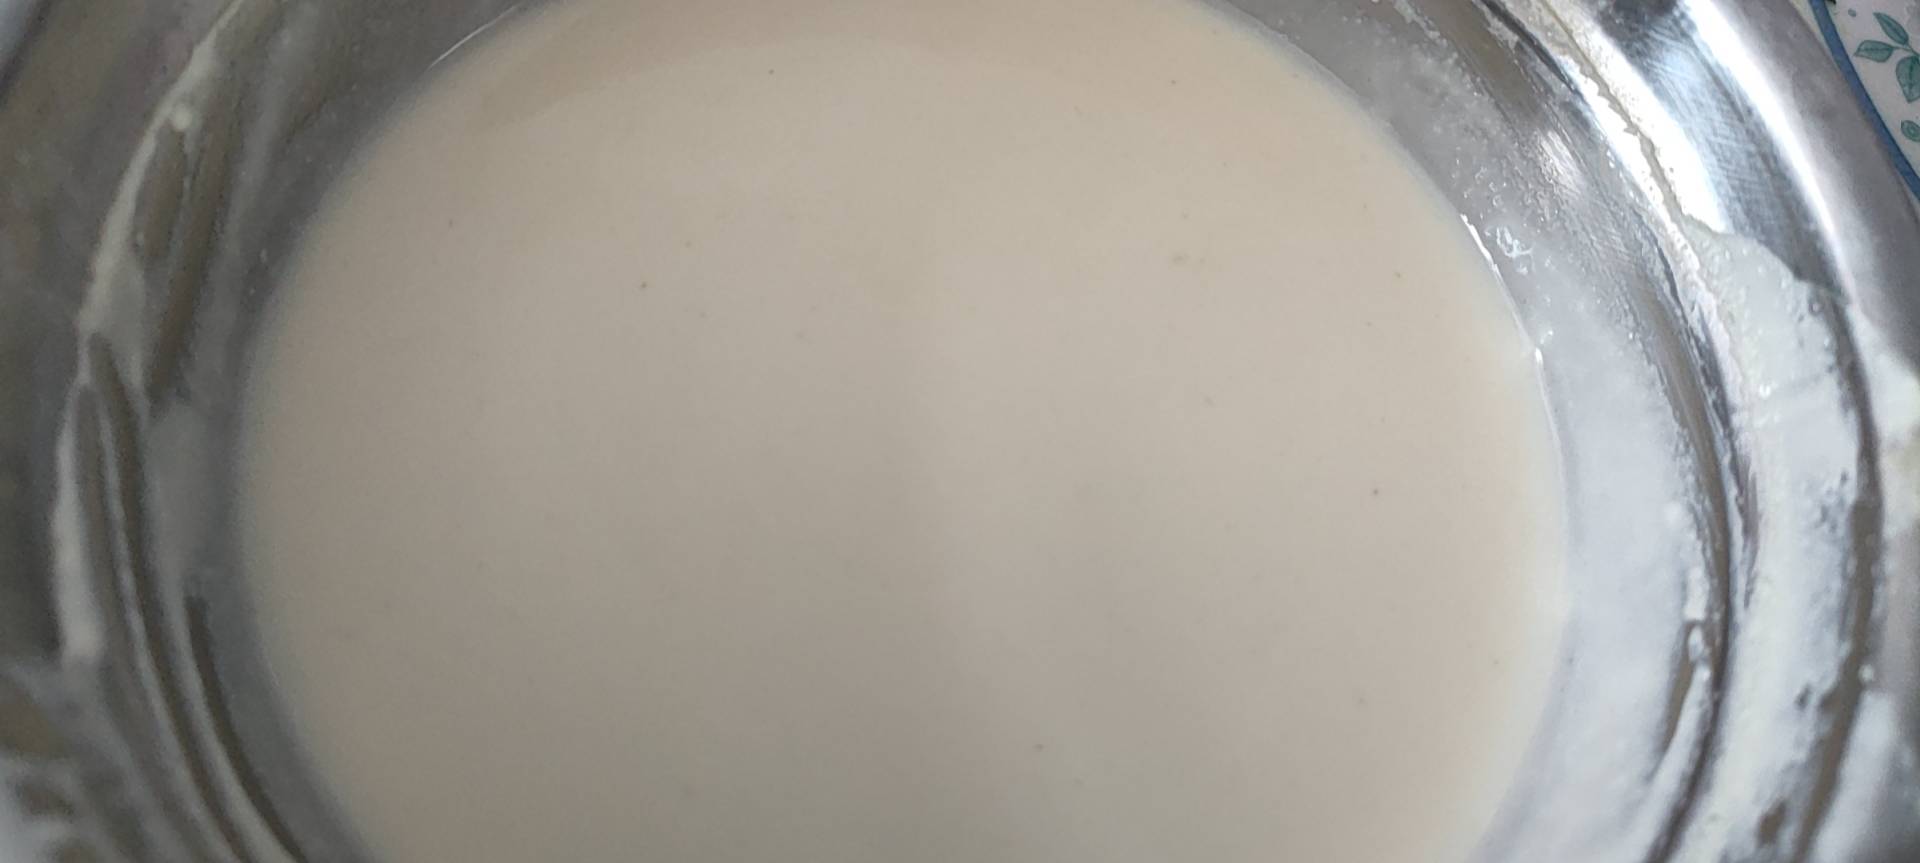 国宴豆浆❗️真的比普通豆浆好喝🤣……❗️❗️❗️